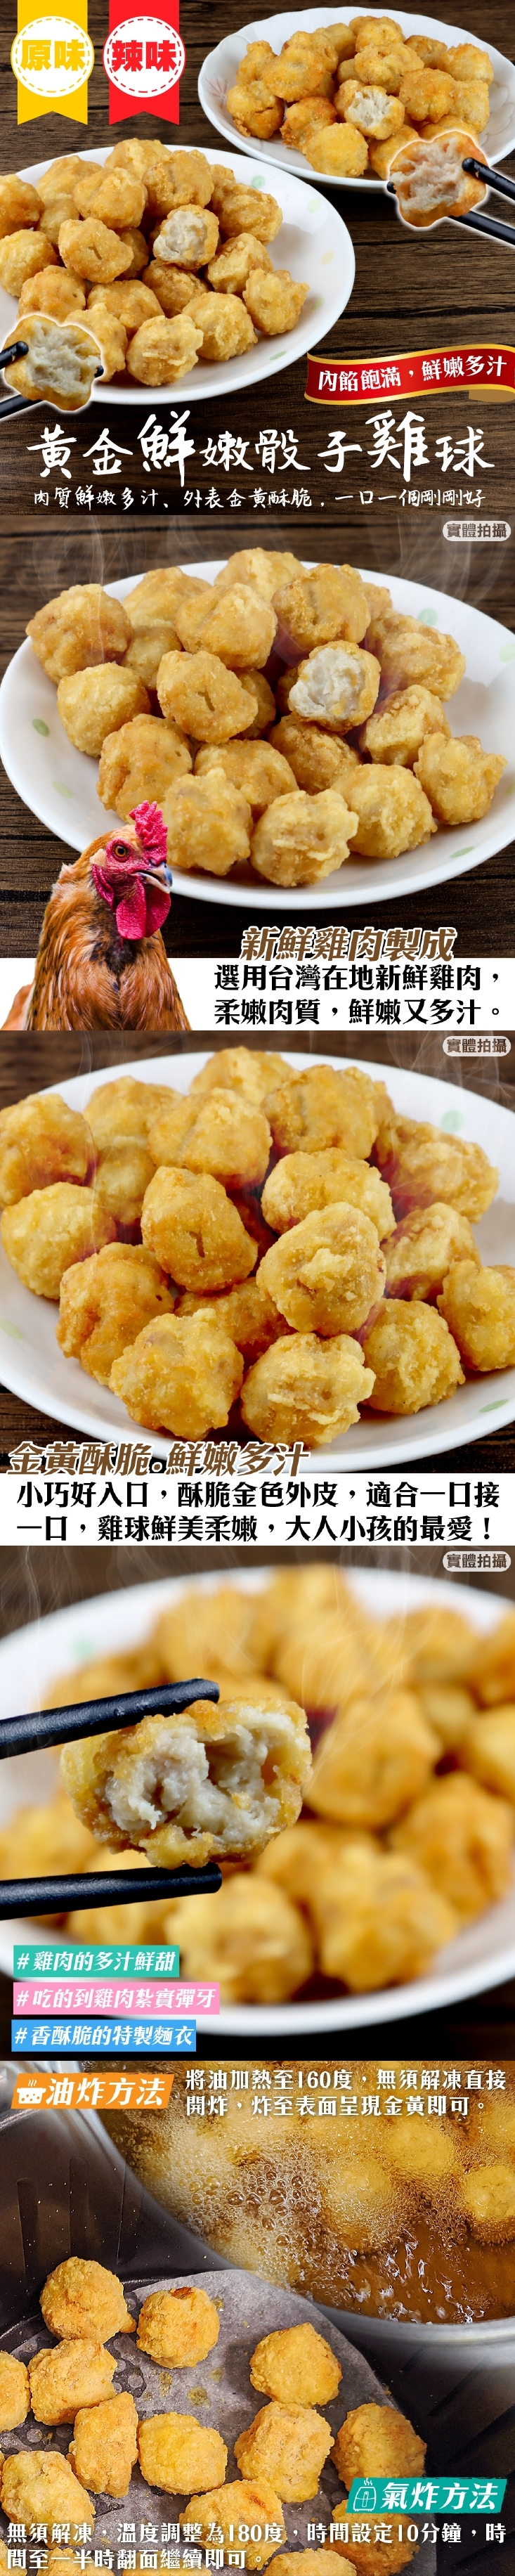 黃金骰子雞球原味/辣味(250g/包)